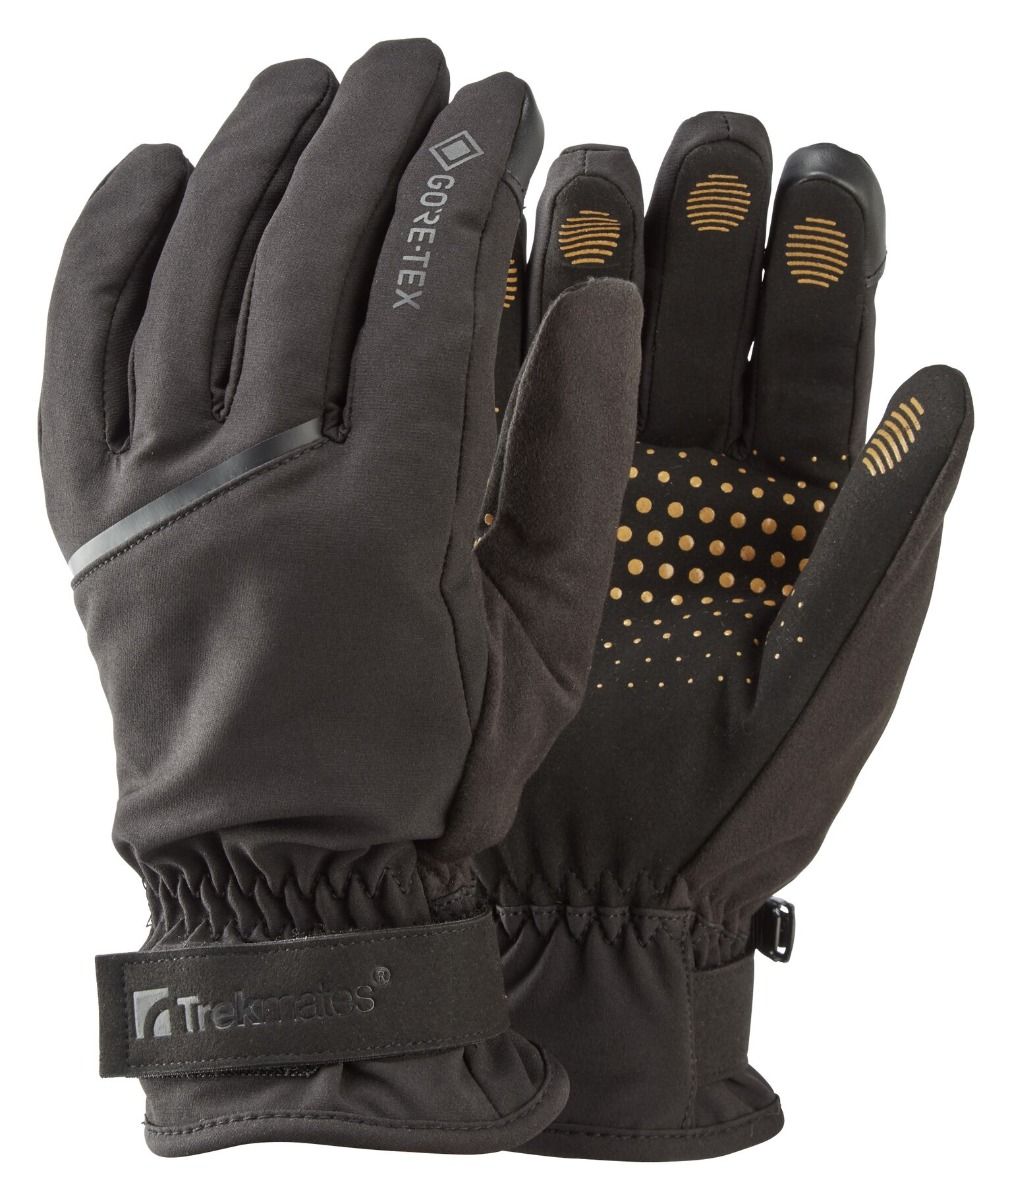 Рукавицы Trekmates Friktion Gore Tex Grip Glove TM 004543 Black, размер S, черные фото 1